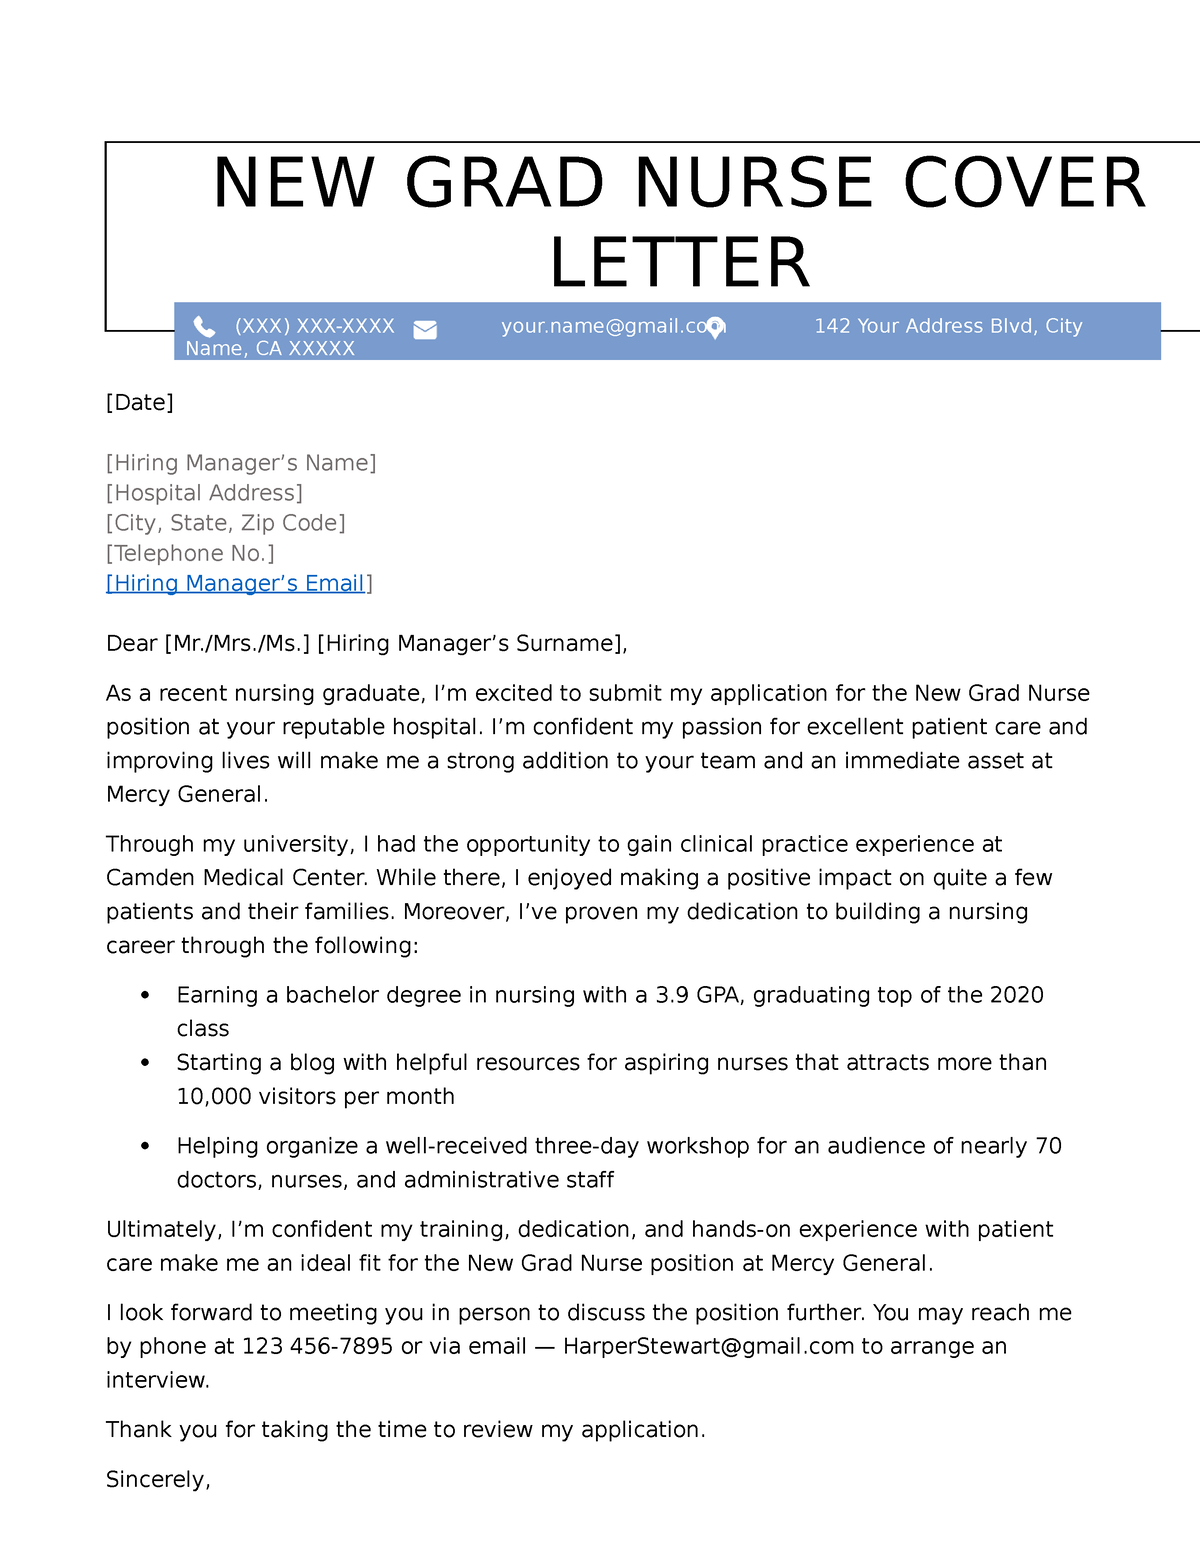 New grad nurse cover letter example - NEW GRAD NURSE COVER LETTER (XXX ...